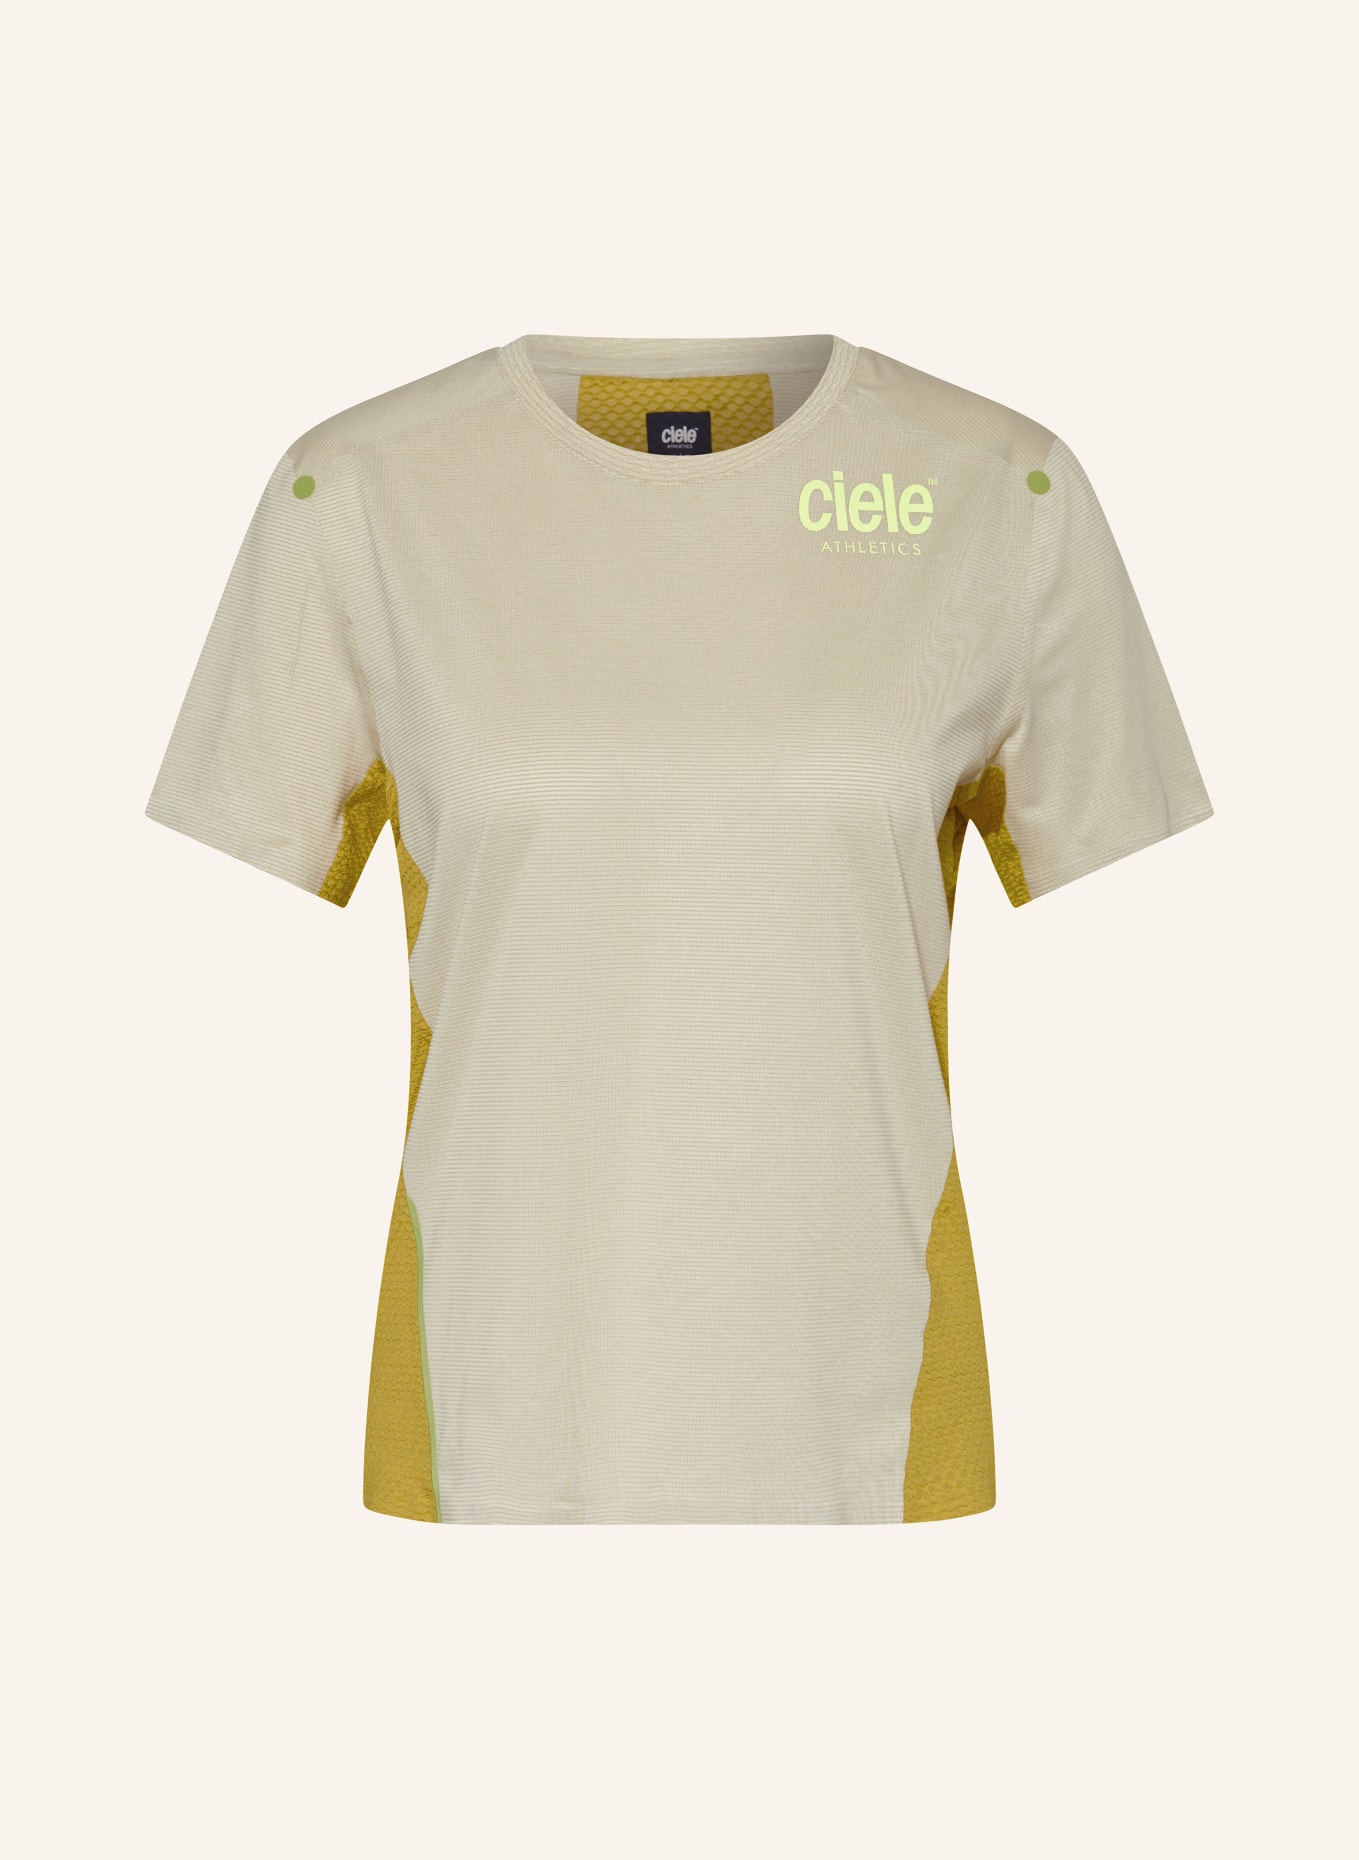 ciele athletics T-shirt ELITE, Color: BEIGE (Image 1)